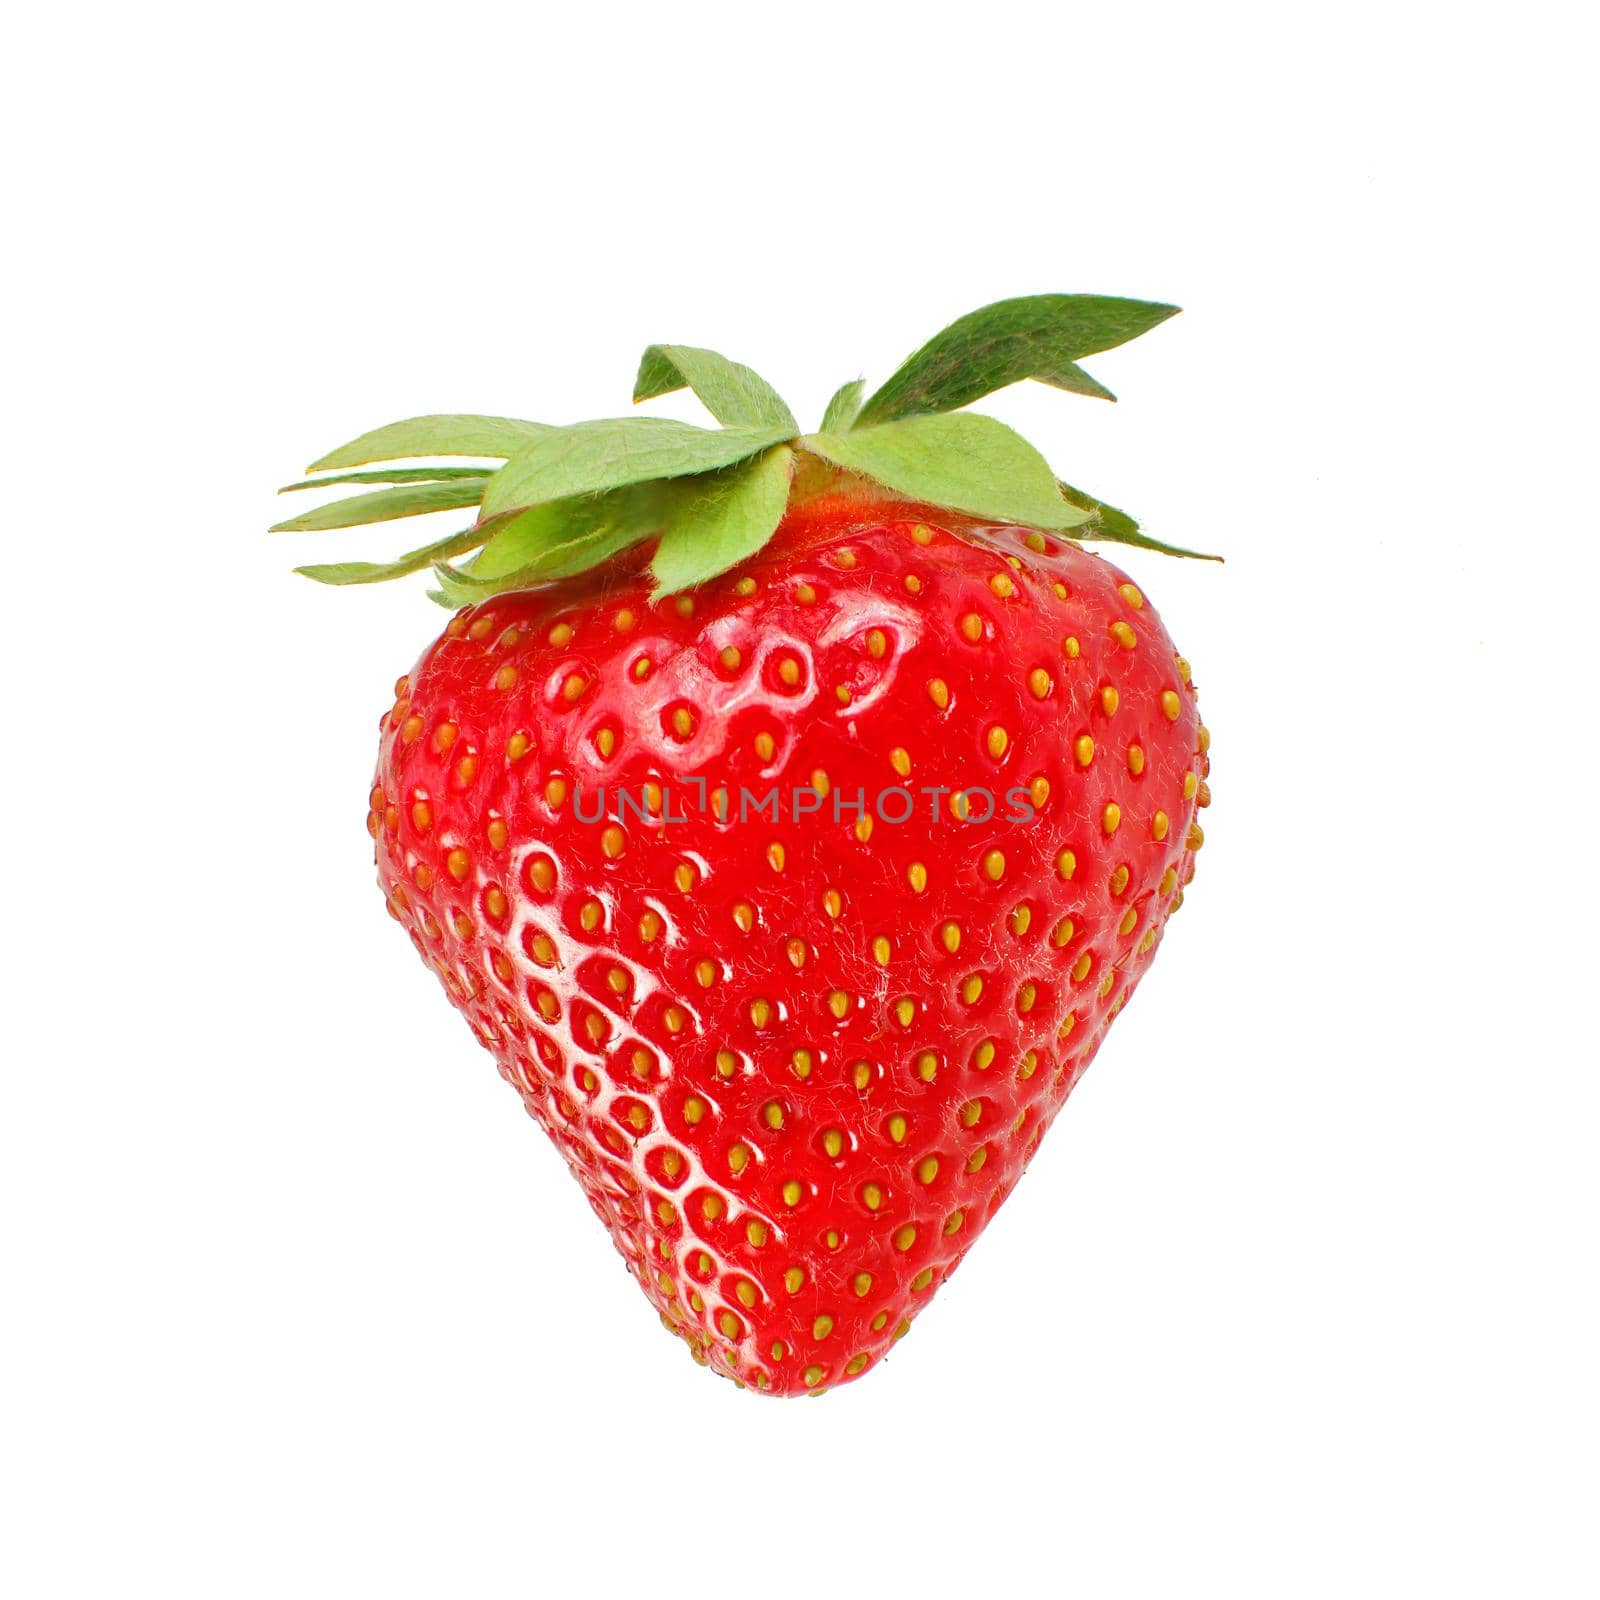 Single ripe strawberry isolated on white background.